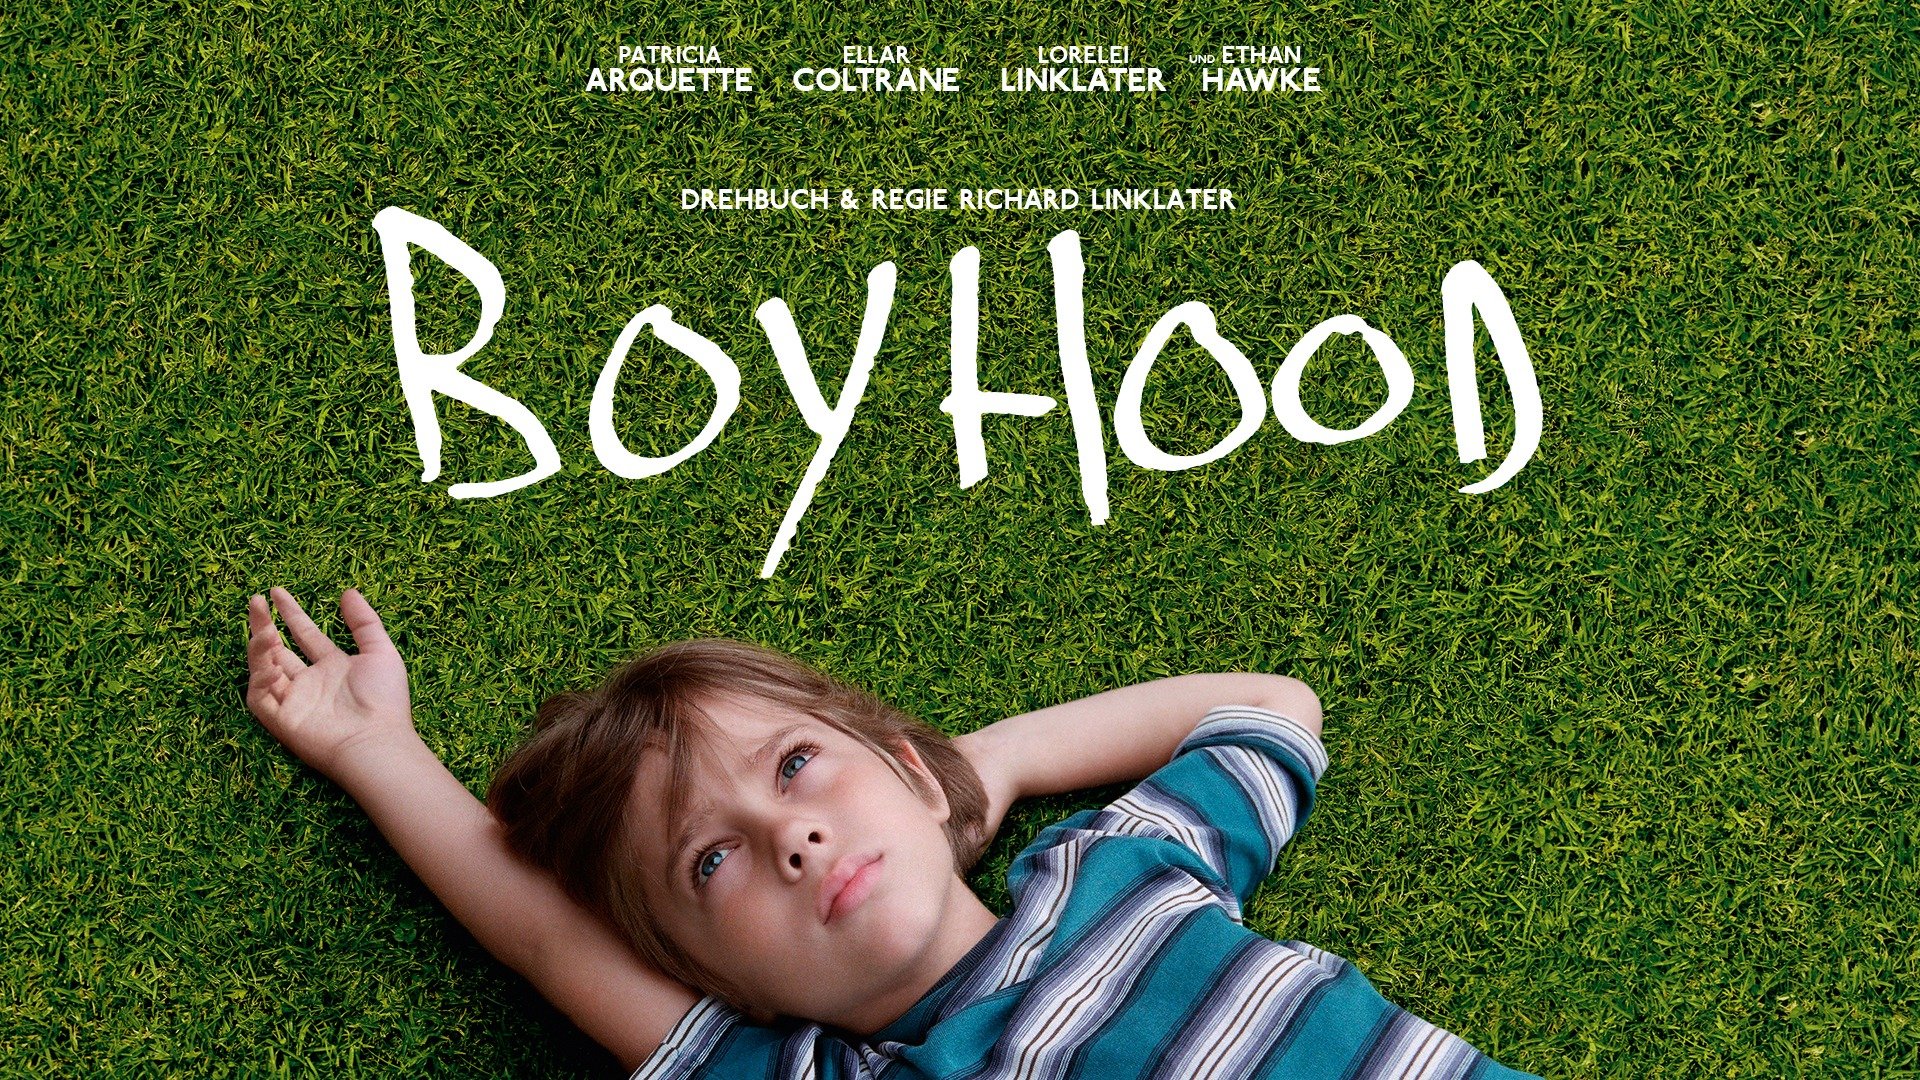 รีวิวภาพยนต์เรื่อง “Boyhood” (2014): การเดินทางของชีวิตผ่านเวลาและการเติบโตที่ลงตัว”